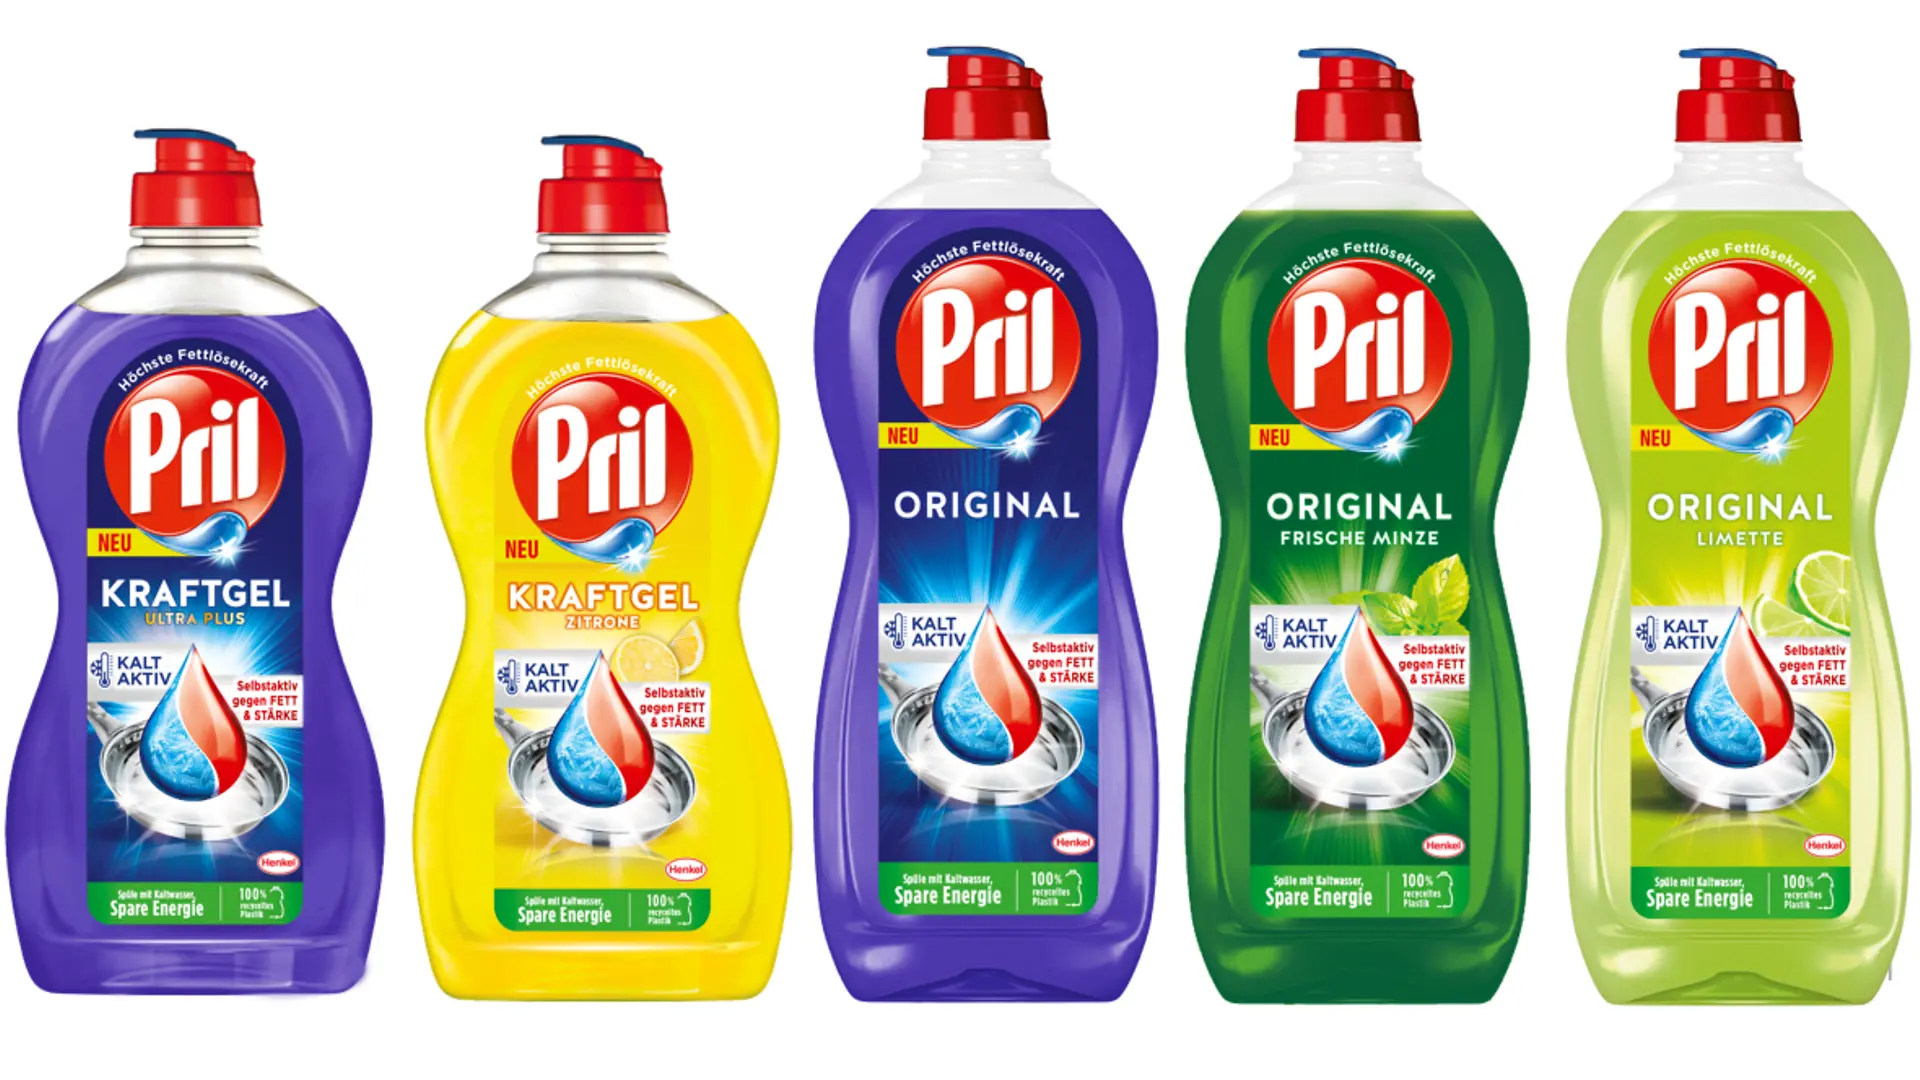 Five Pril dishwashing detergent bottles